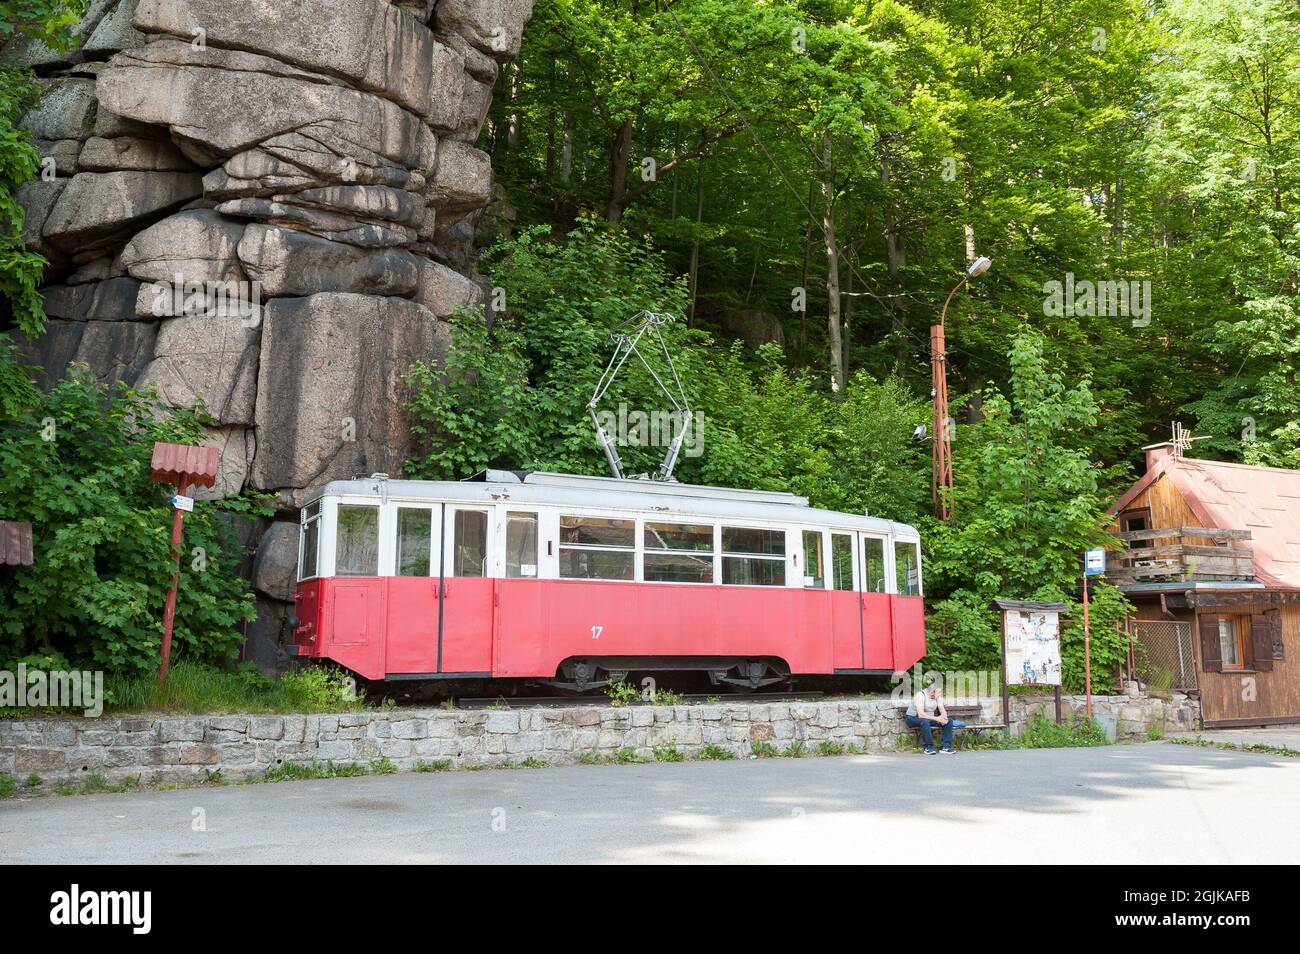 Bus stop in Karkonosze Mountains, Poland Stock Photo